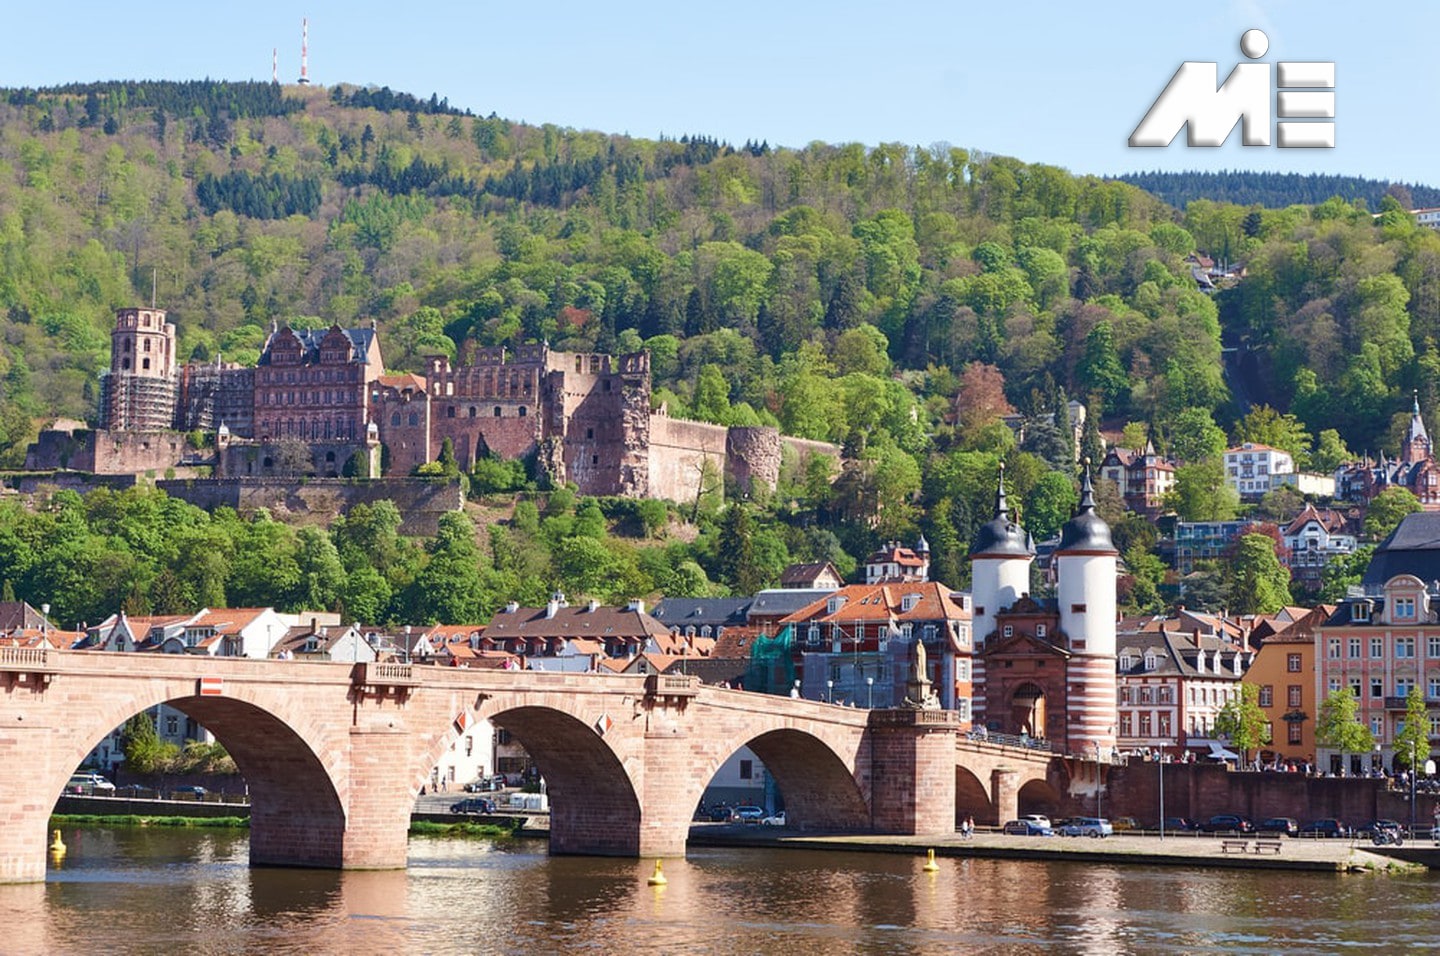 هایدلبرگ:این شهر در حاشیه رود Neckar قرار دارد و از زیباترین شهرهای آلمان است. قدمت آن به چندین هزار سال پیش باز می گردد. از آنجا که این شهر در دوران جنگ مورد حمله قرار نگرفت و از حملات متفقین در امان بوده است، در طی قرن ها رشد طبیعی و ارگانیک داشته و در مرکز این شهر قلعه و باروئی وجود دارد که از بناهای قرون وسطائی معروف در آلمان می باشد.